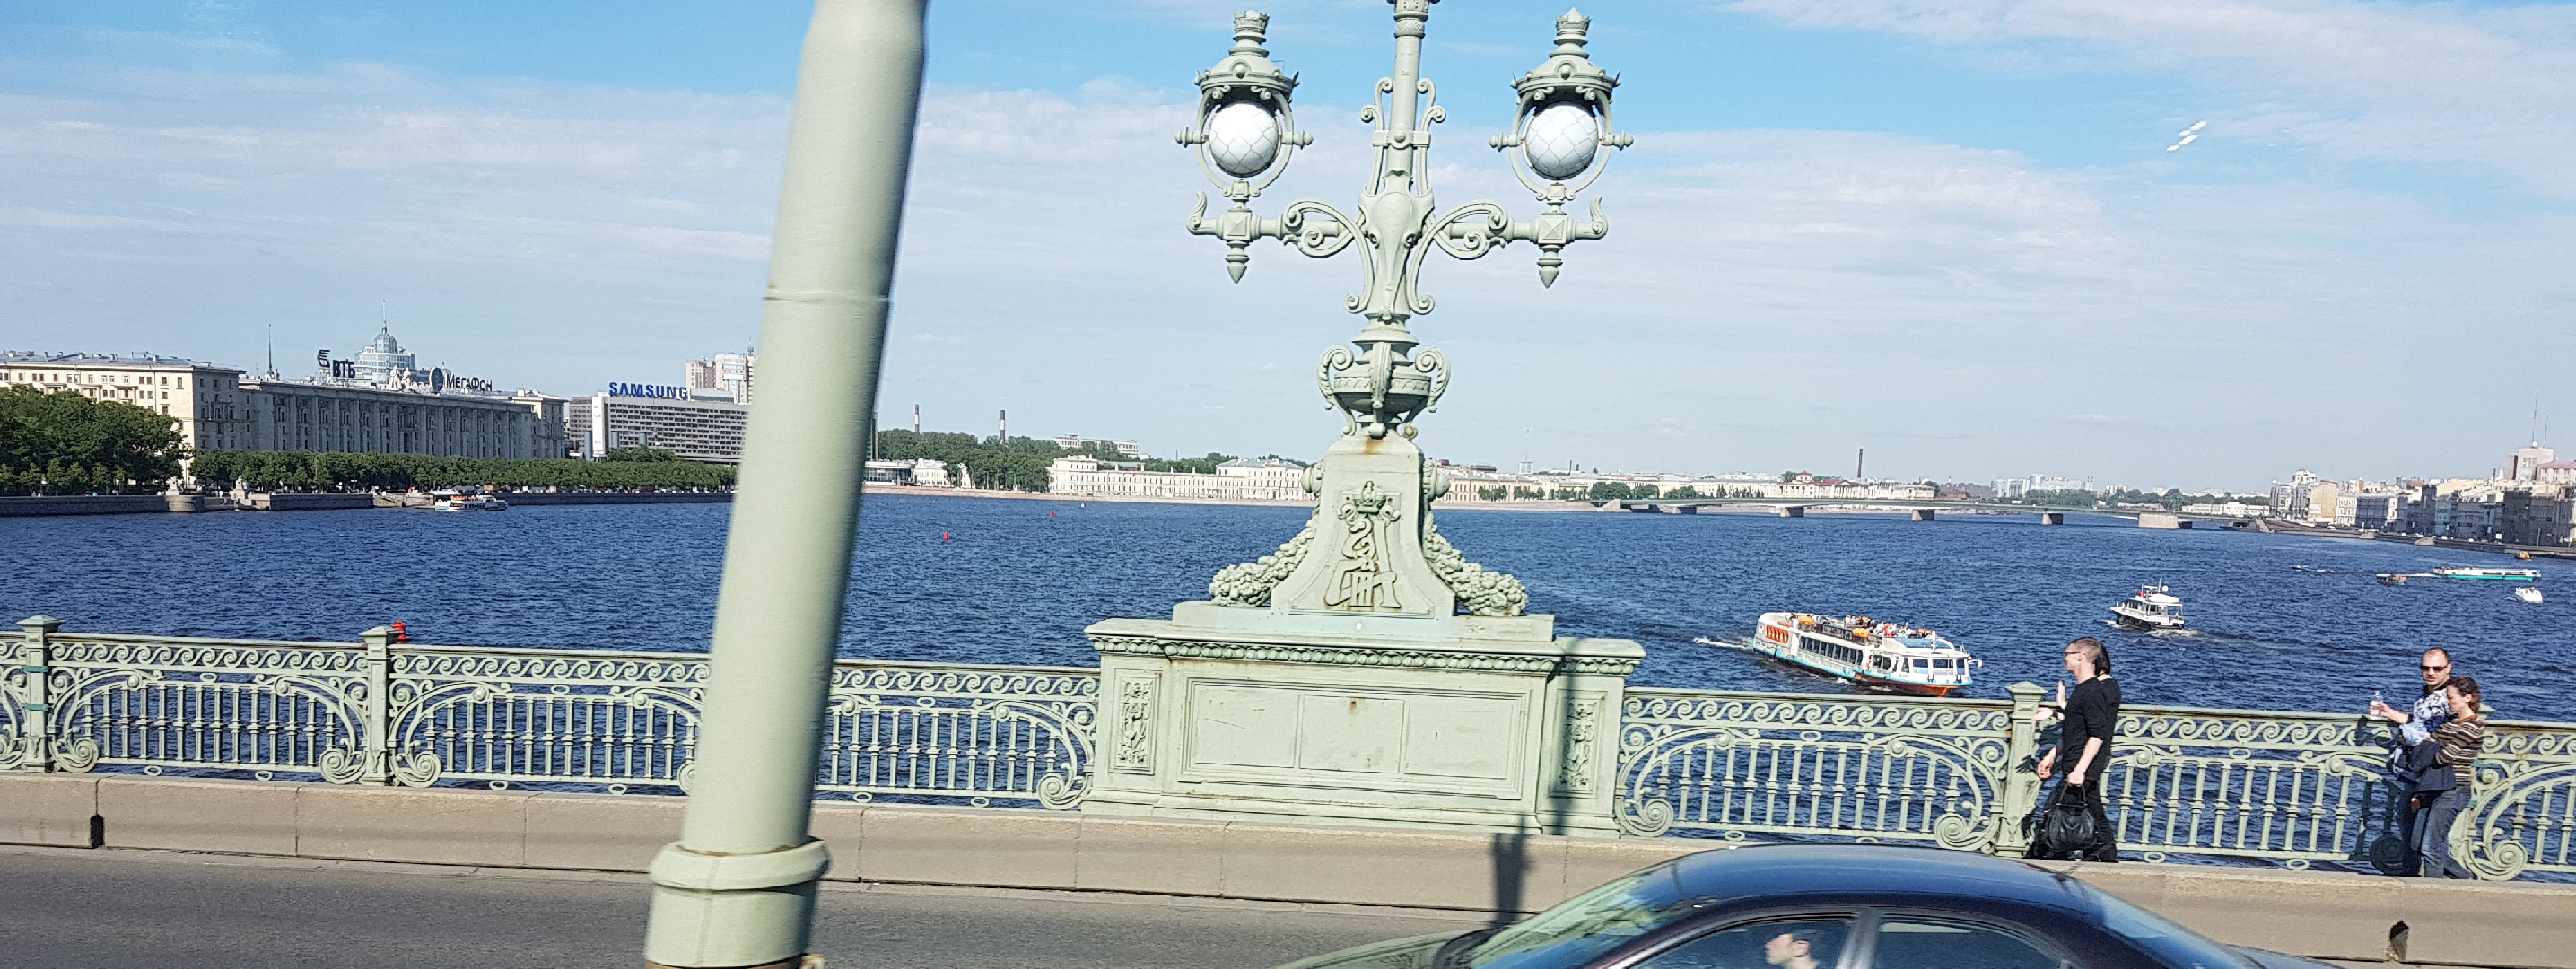 20170709-170156-St-Petersburg-SJ-2.jpg